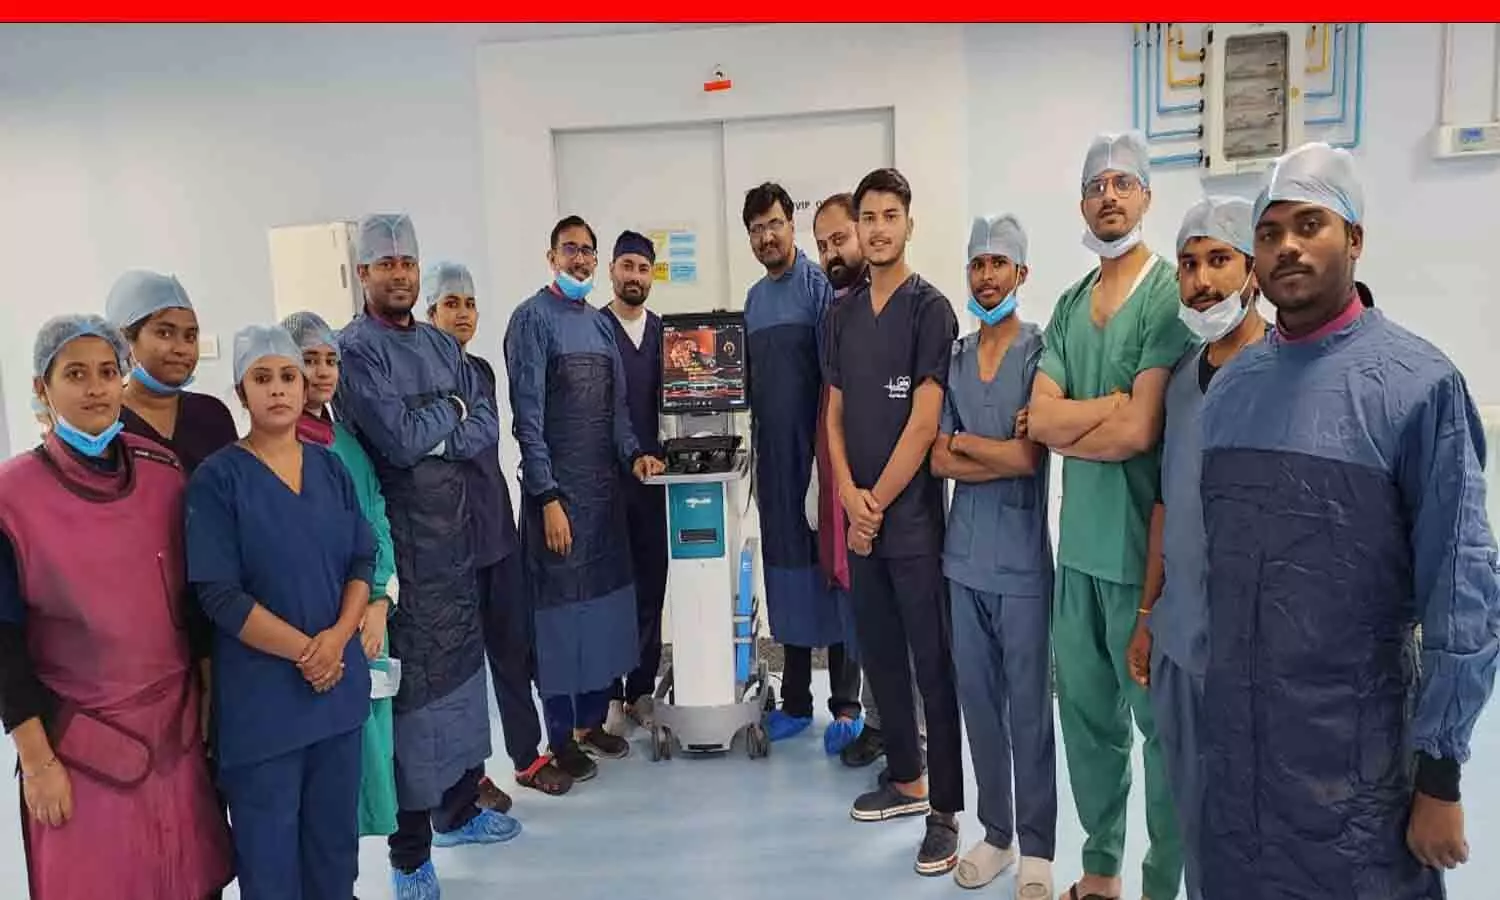 मरीजों के लिए वरदान बना रीवा का सुपर स्पेशलिटी हॉस्पिटल, हृदय रोग विभाग में OCT तकनीक का इस्तेमाल कर बचाई मरीज की जान